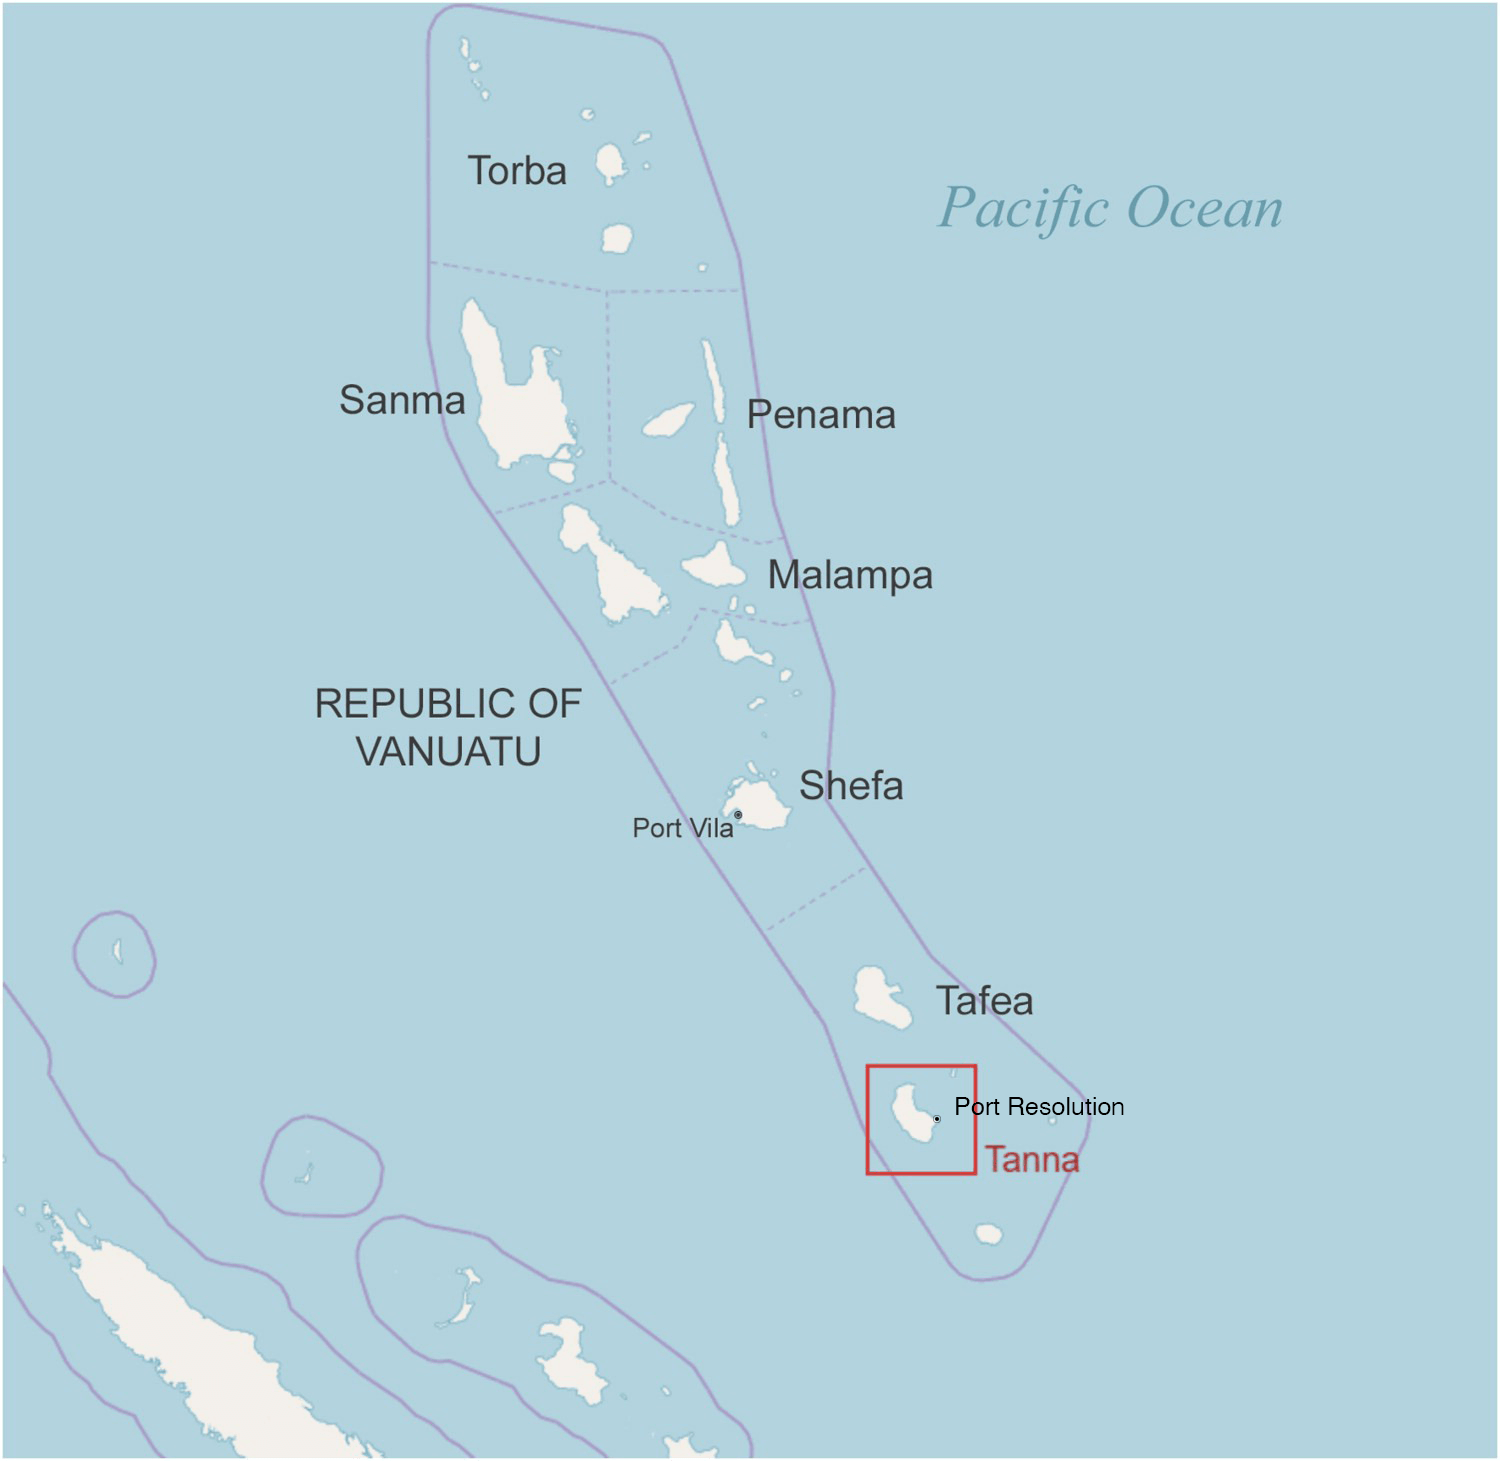 Map of the Republic of Vanuatu